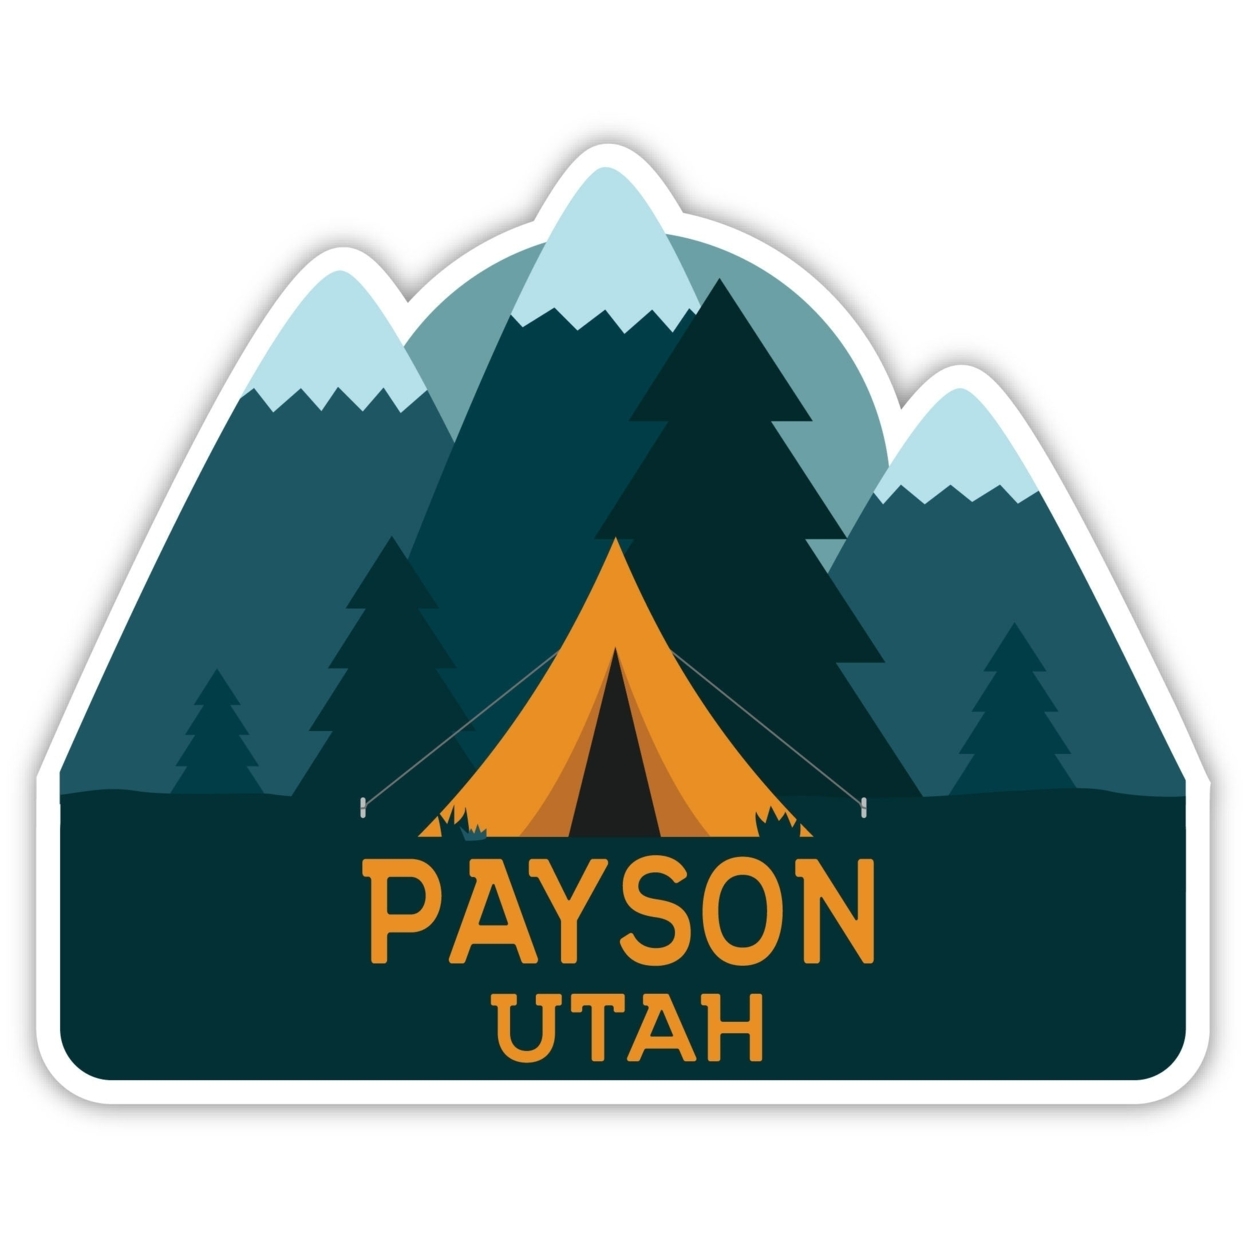 Payson Utah Souvenir Decorative Stickers (Choose Theme And Size) - Single Unit, 2-Inch, Tent